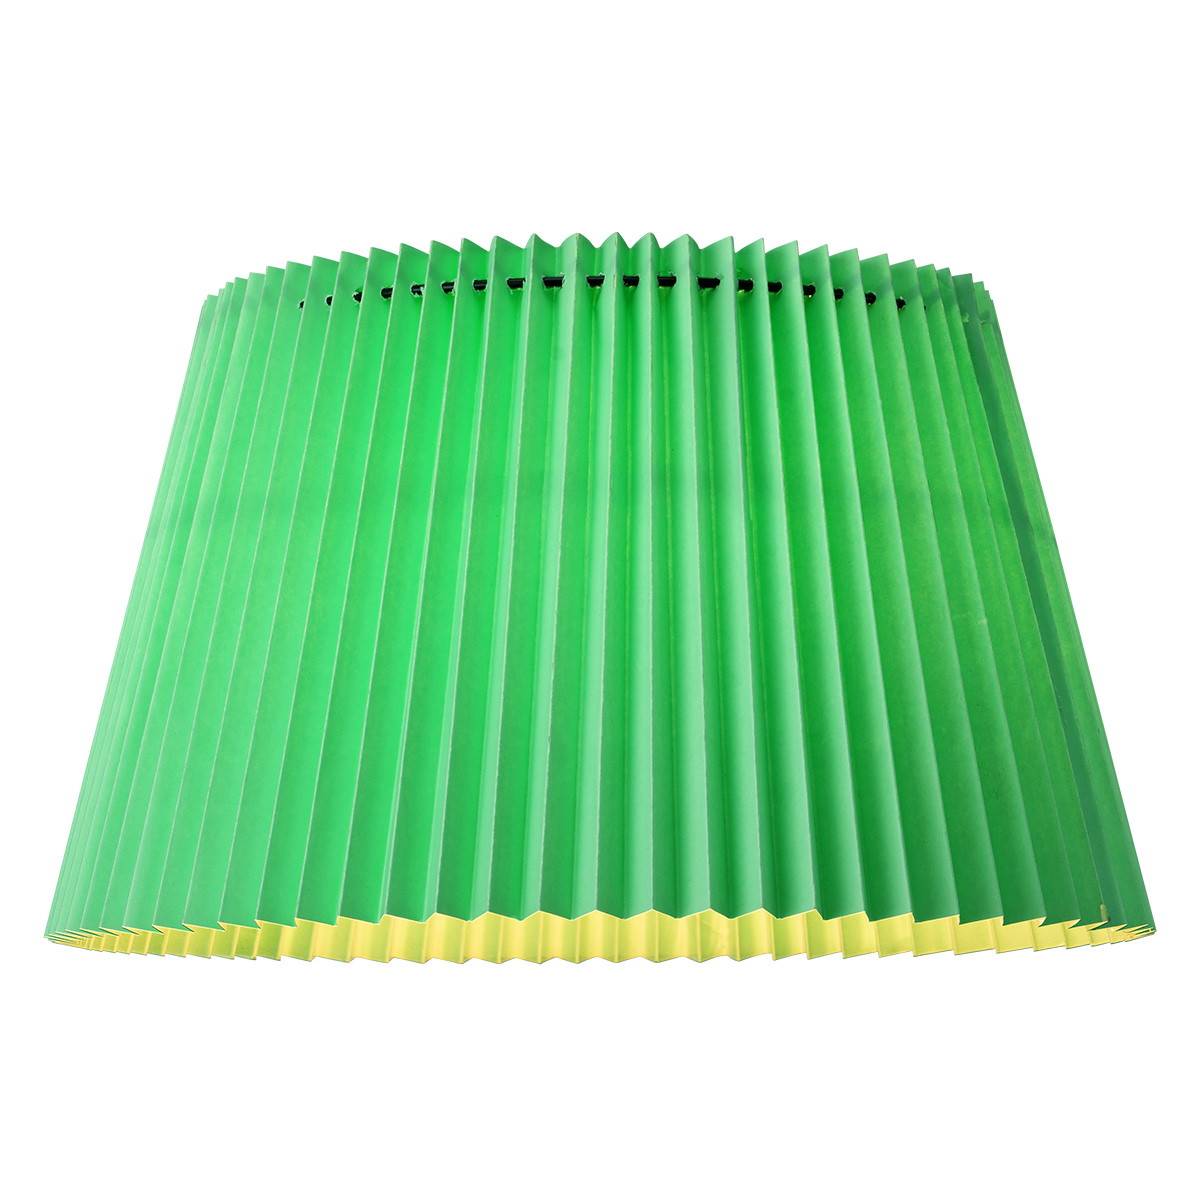 Tangla Lighting - Lampshade - metal and paper - green - taper - diameter 40cm - E27